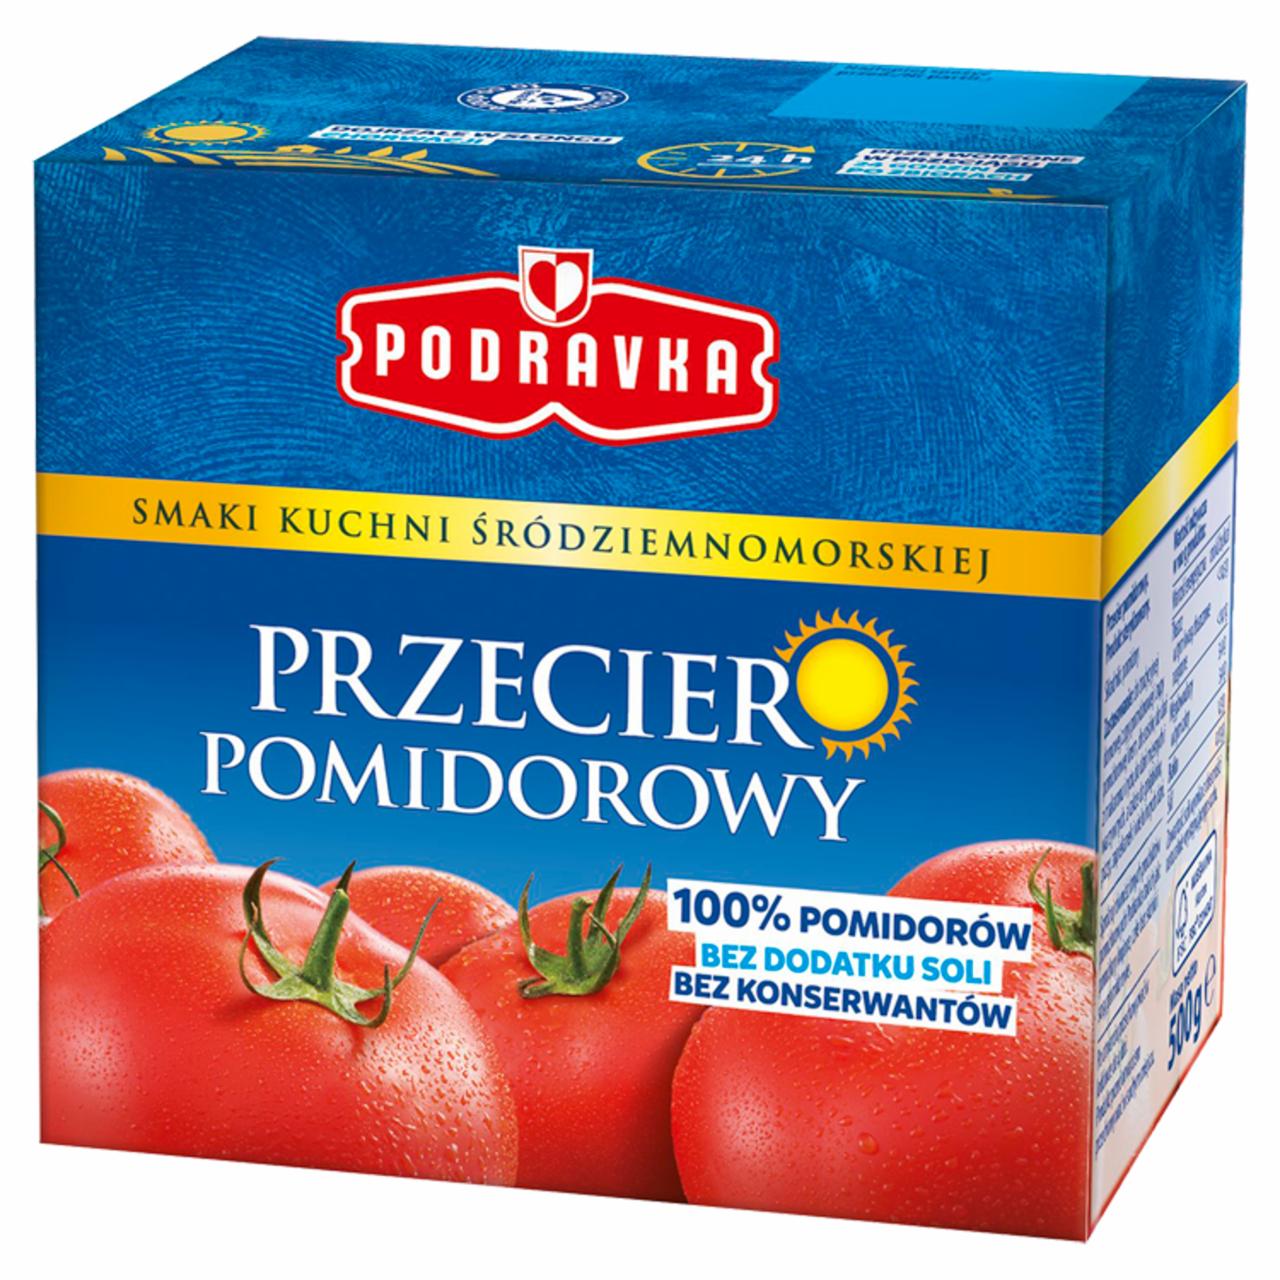 Zdjęcia - Podravka Przecier pomidorowy 500 g